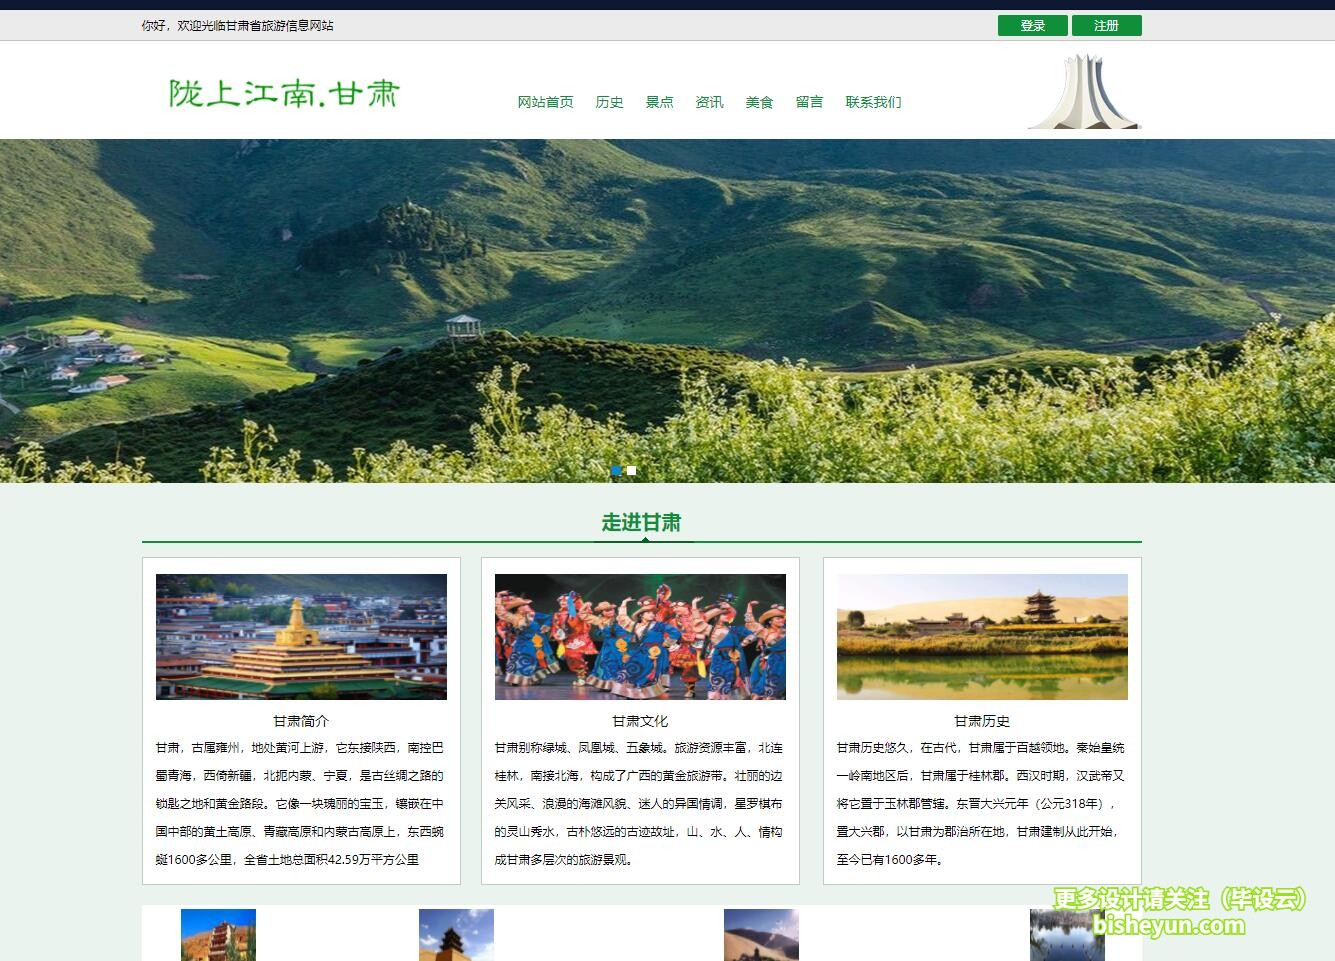 基于php甘肃旅游网站管理系统-系统主页